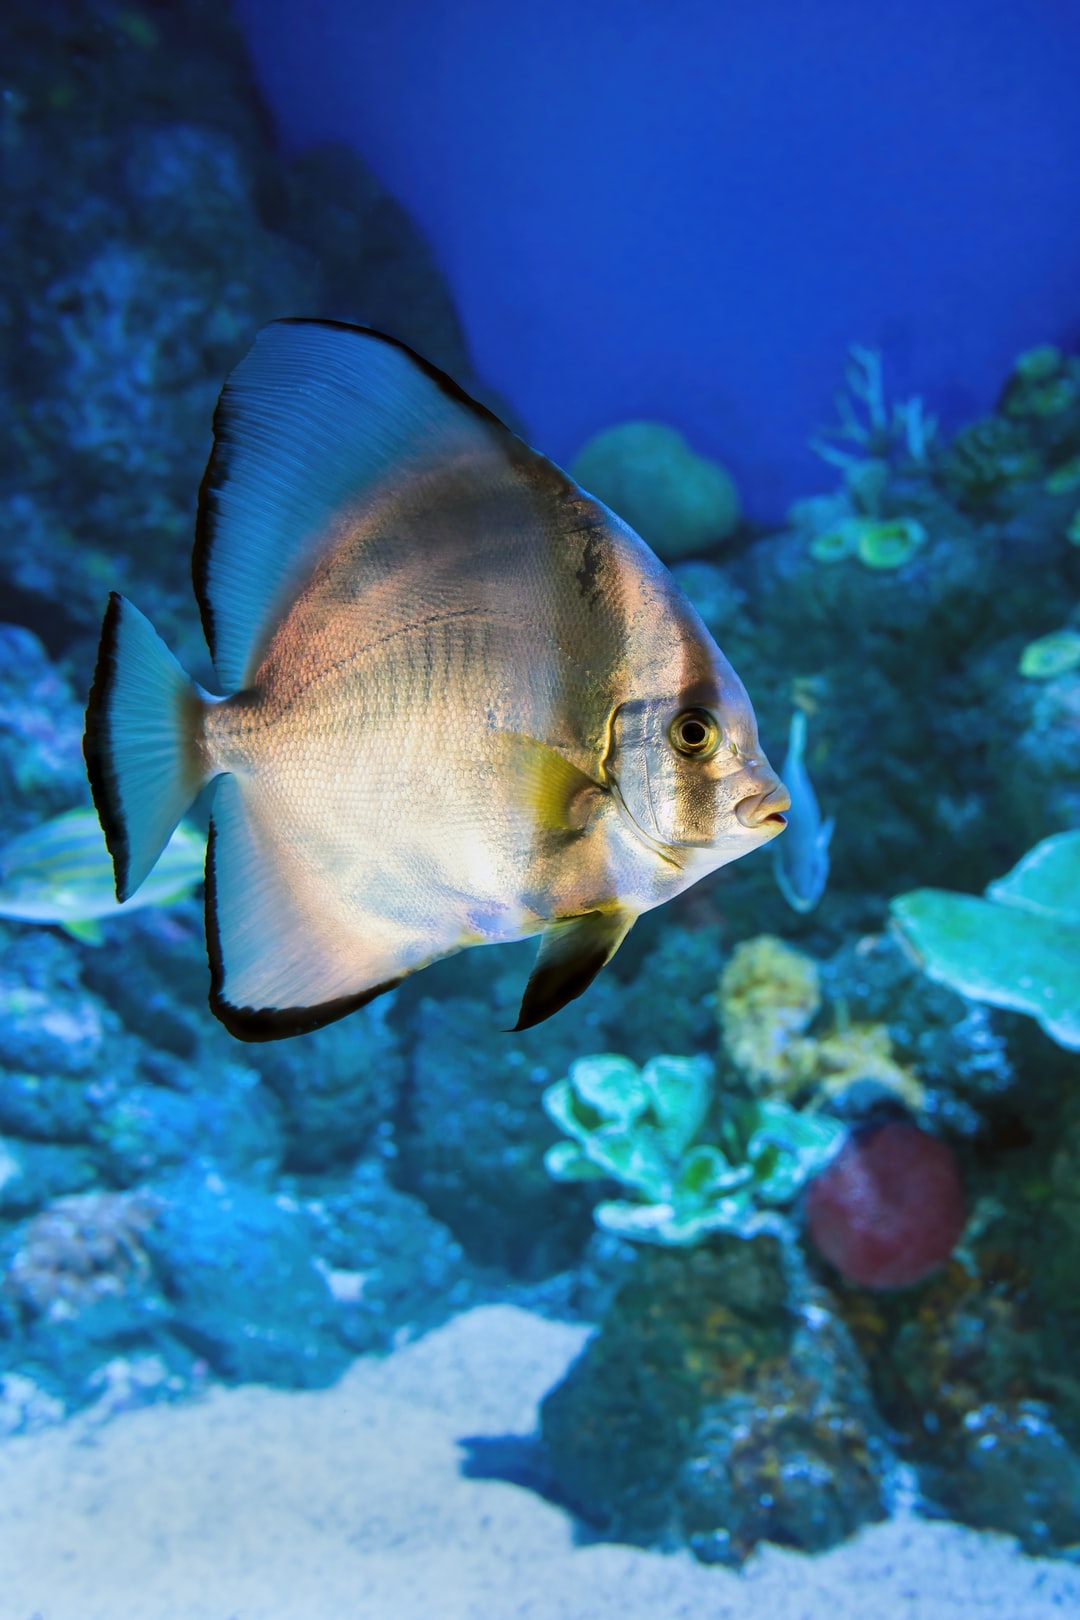 25 wichtige Fragen zu Wie Viel Kg Kies Im Aquarium?